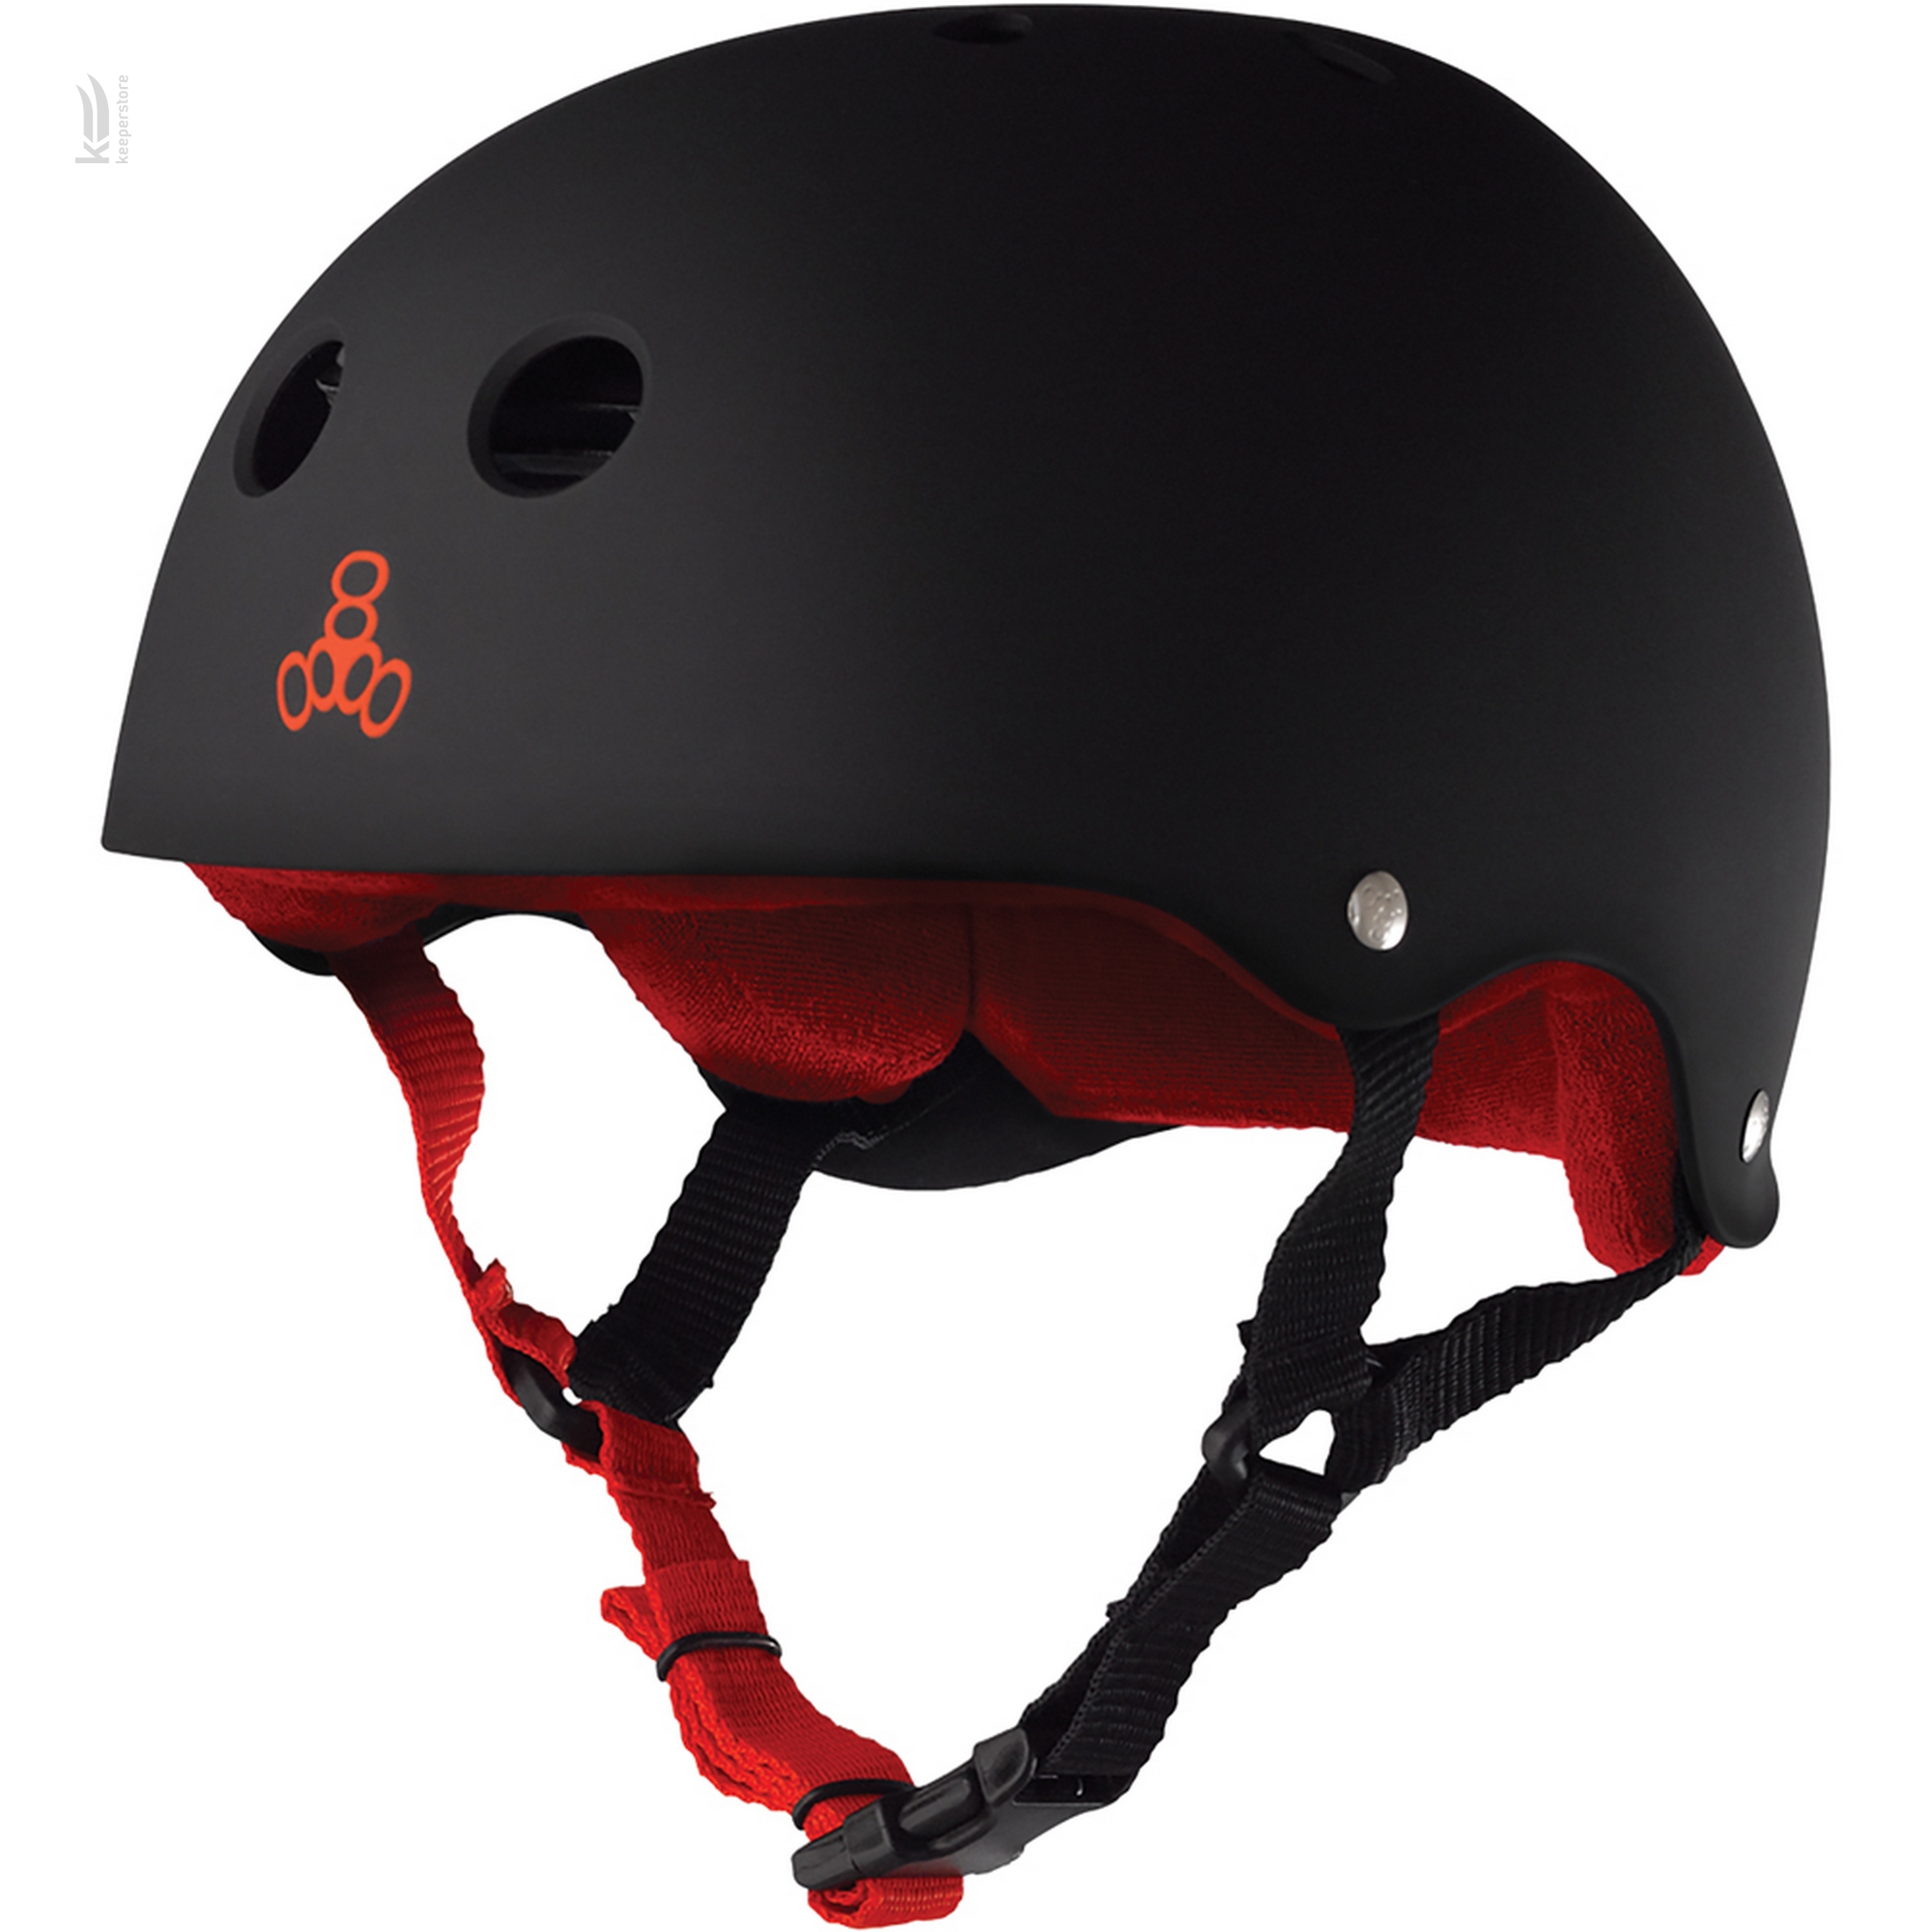 Защитный шлем для взрослых Triple8 Sweatsaver Helmet Black w/ Red (M)